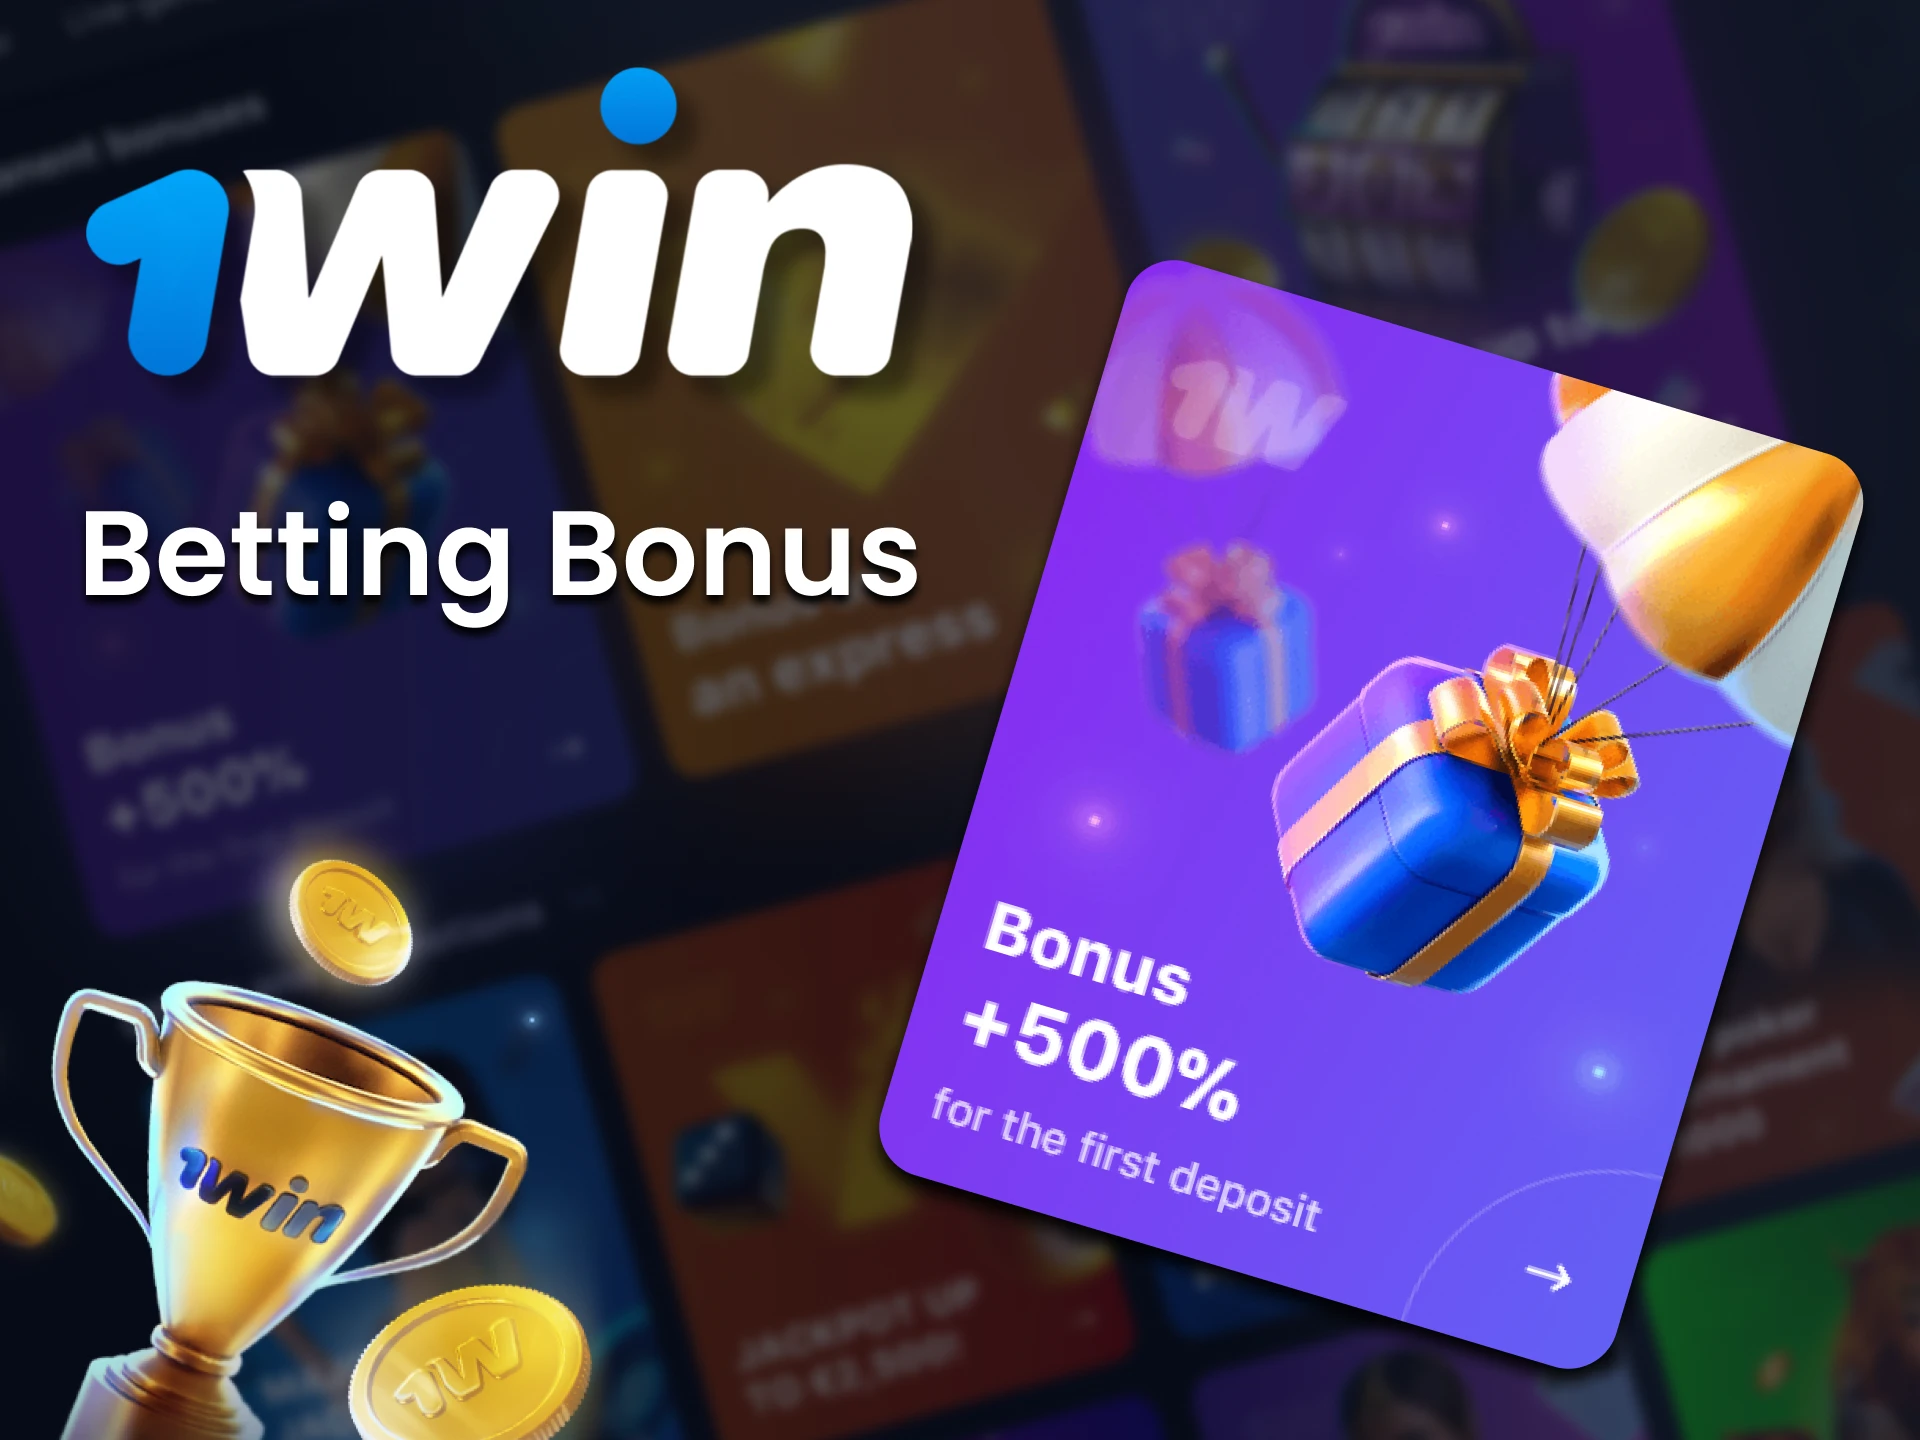 Get a 1win first deposit bonus of 500%.